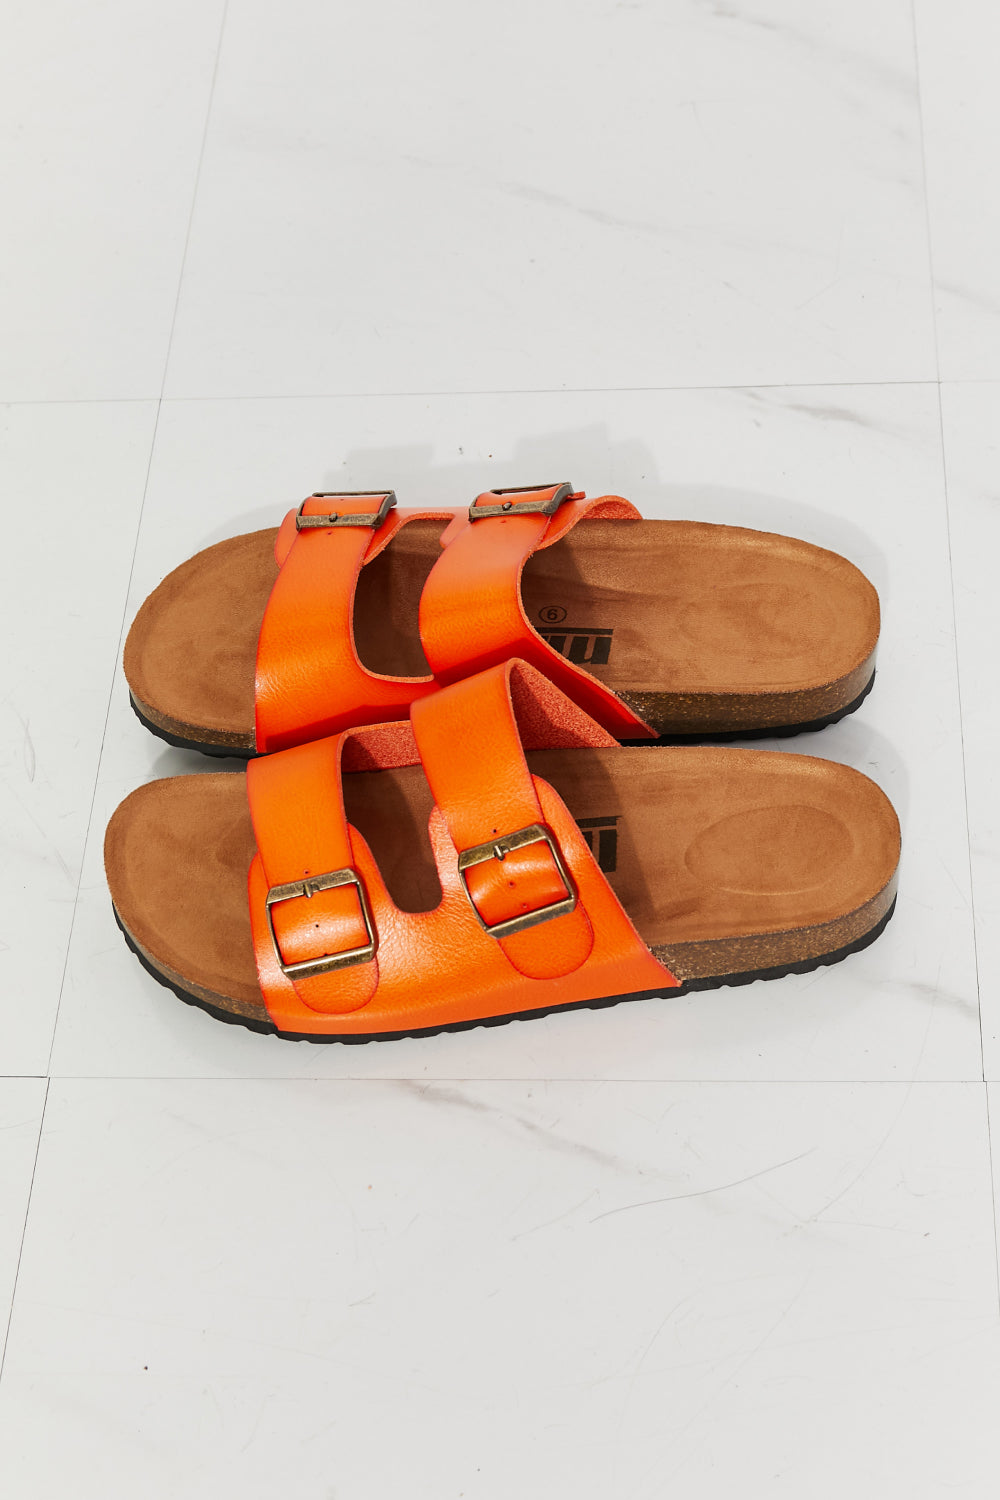 MMShoes Feeling Alive Double Banded Slide Sandals in Orange king-general-store-5710.myshopify.com